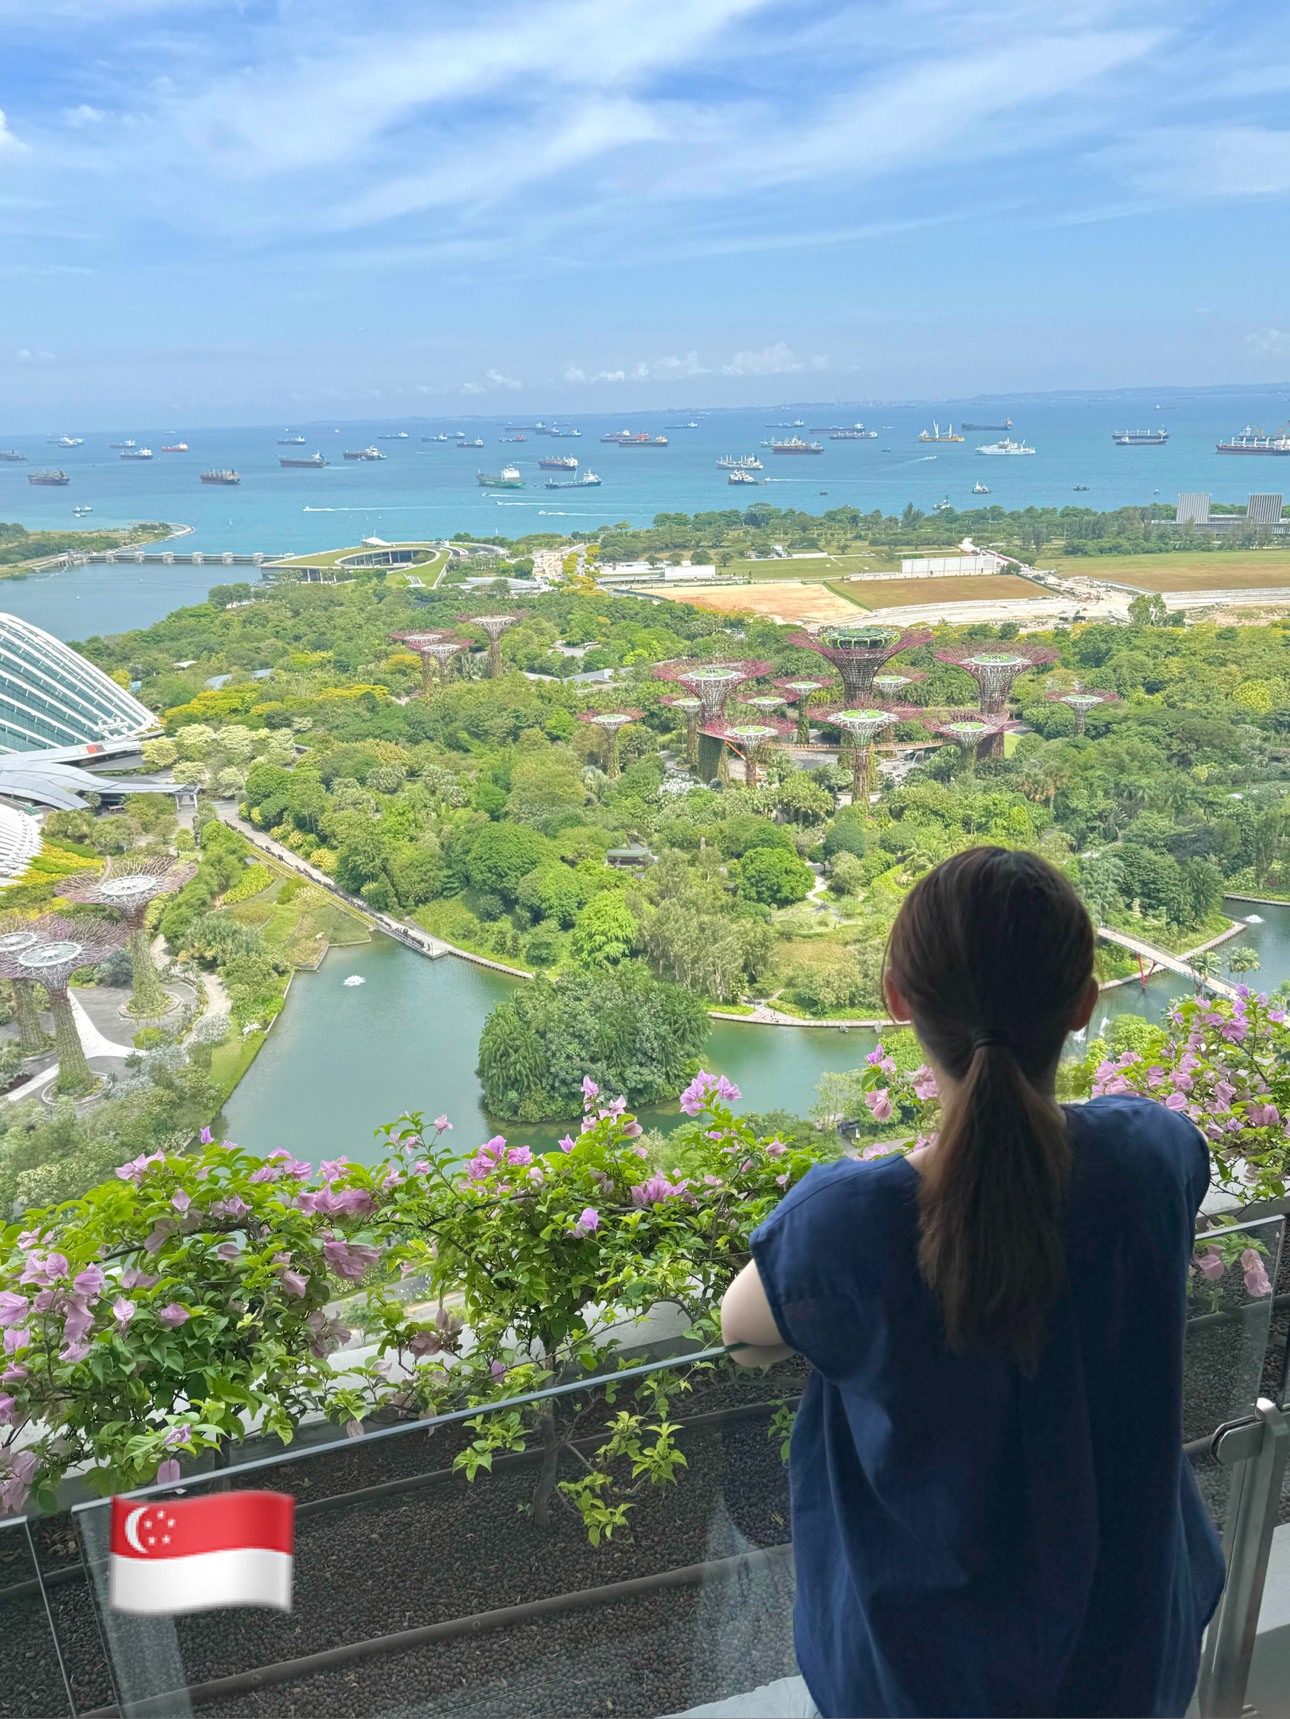 [新加坡]如果您去新加坡,我想过夜!我渴望的滨海湾金沙